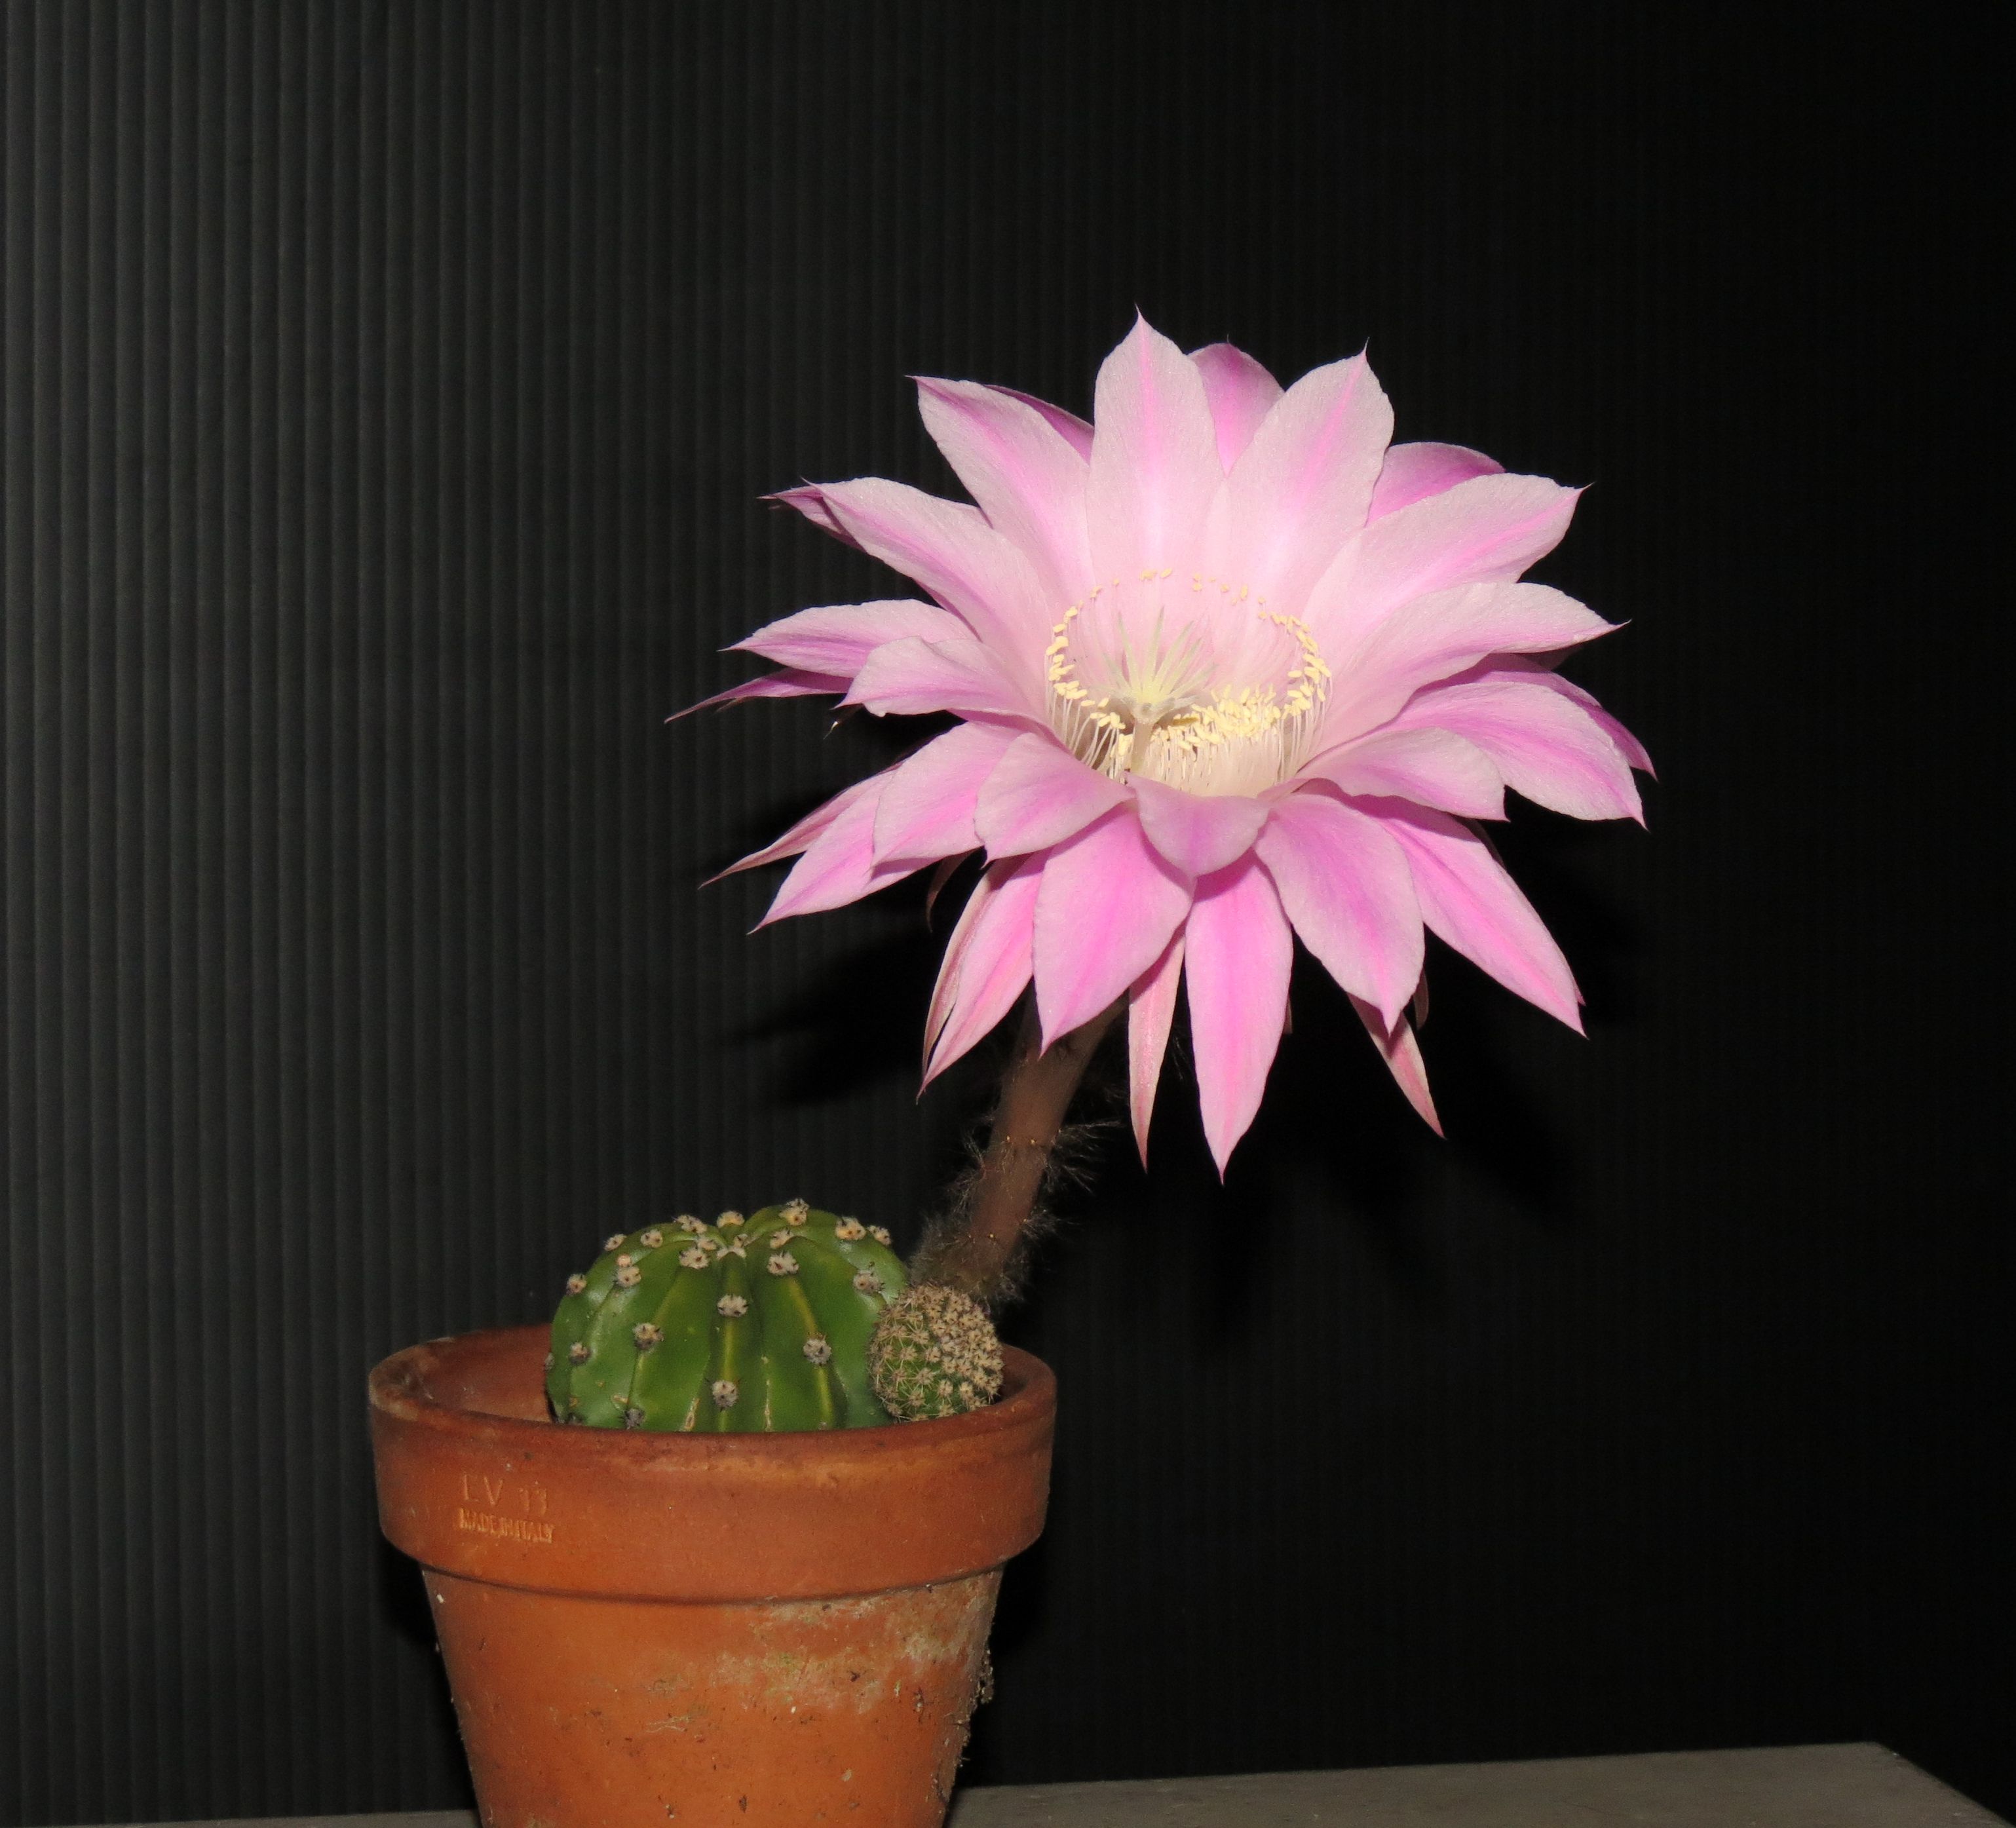 File:Echinopsis cactus flower 02.jpg - Wikimedia Commons